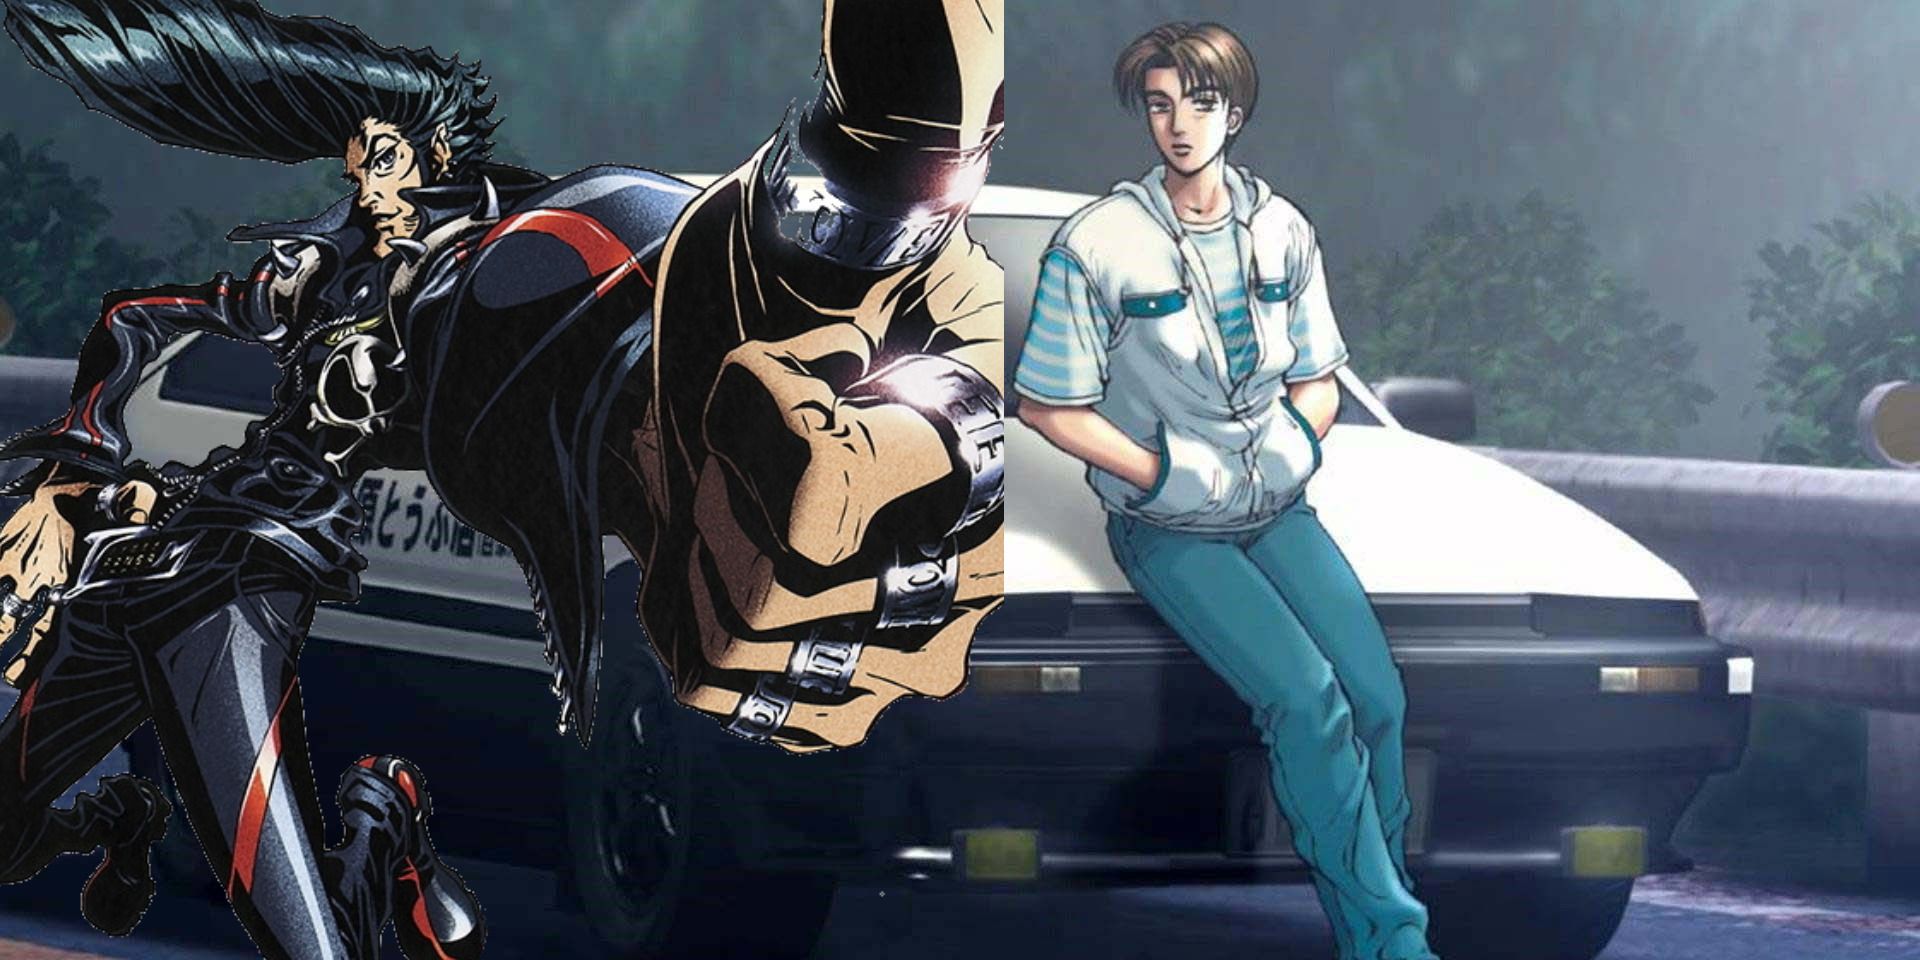 Speed Racer - Anime Fight Scene - YouTube